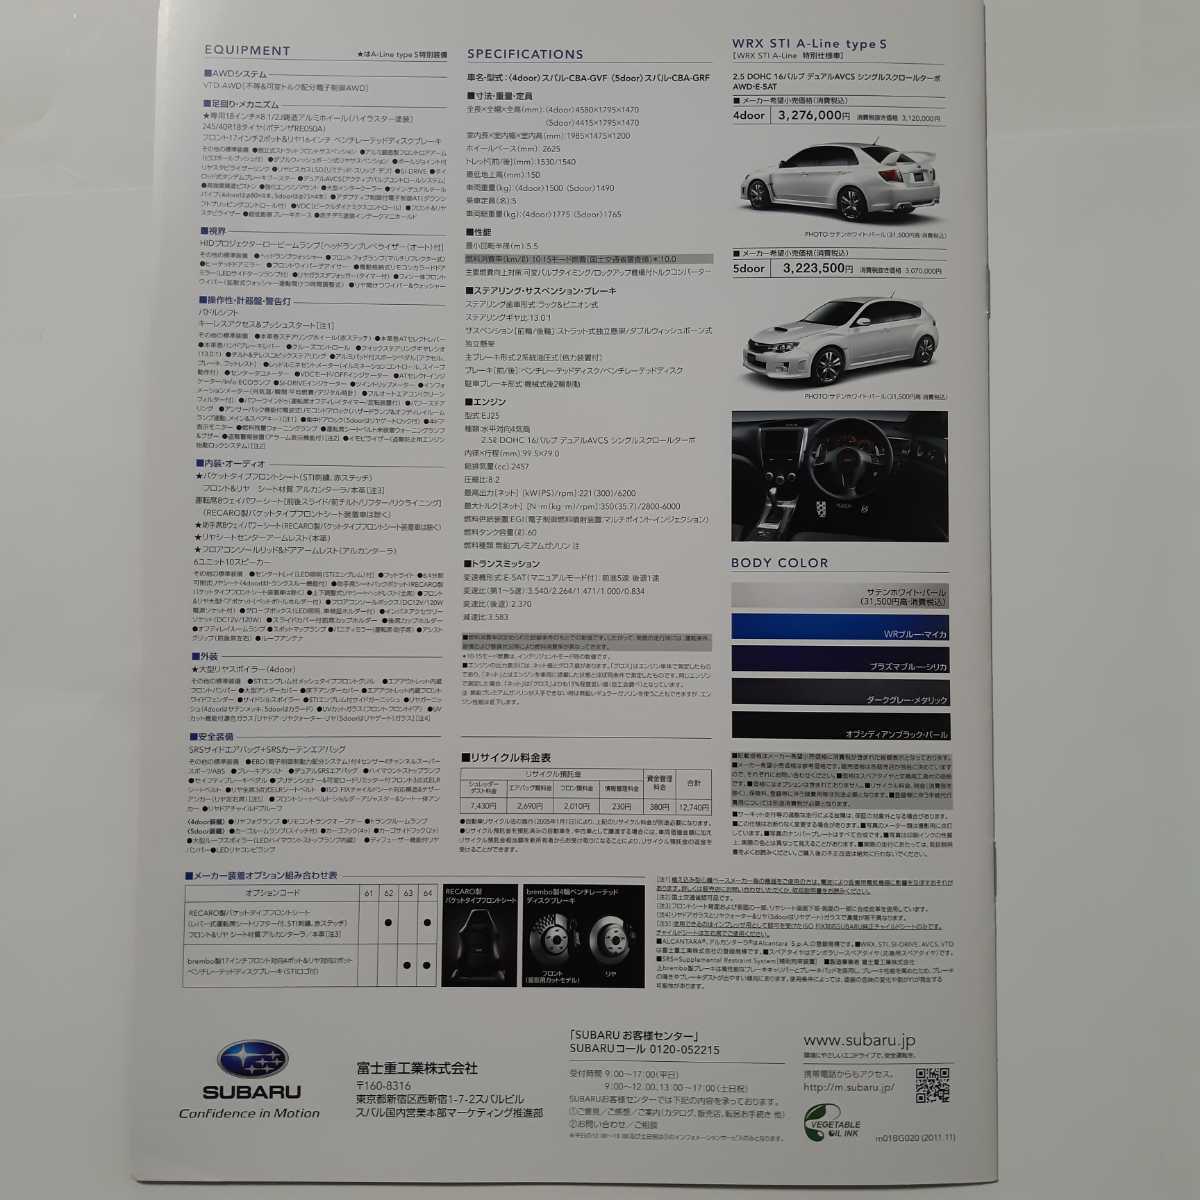 海外限定】 スバル SUBARU WRX STI A-Line type s 特別使様車 カタログ 2011.11 levelaheadaba.com